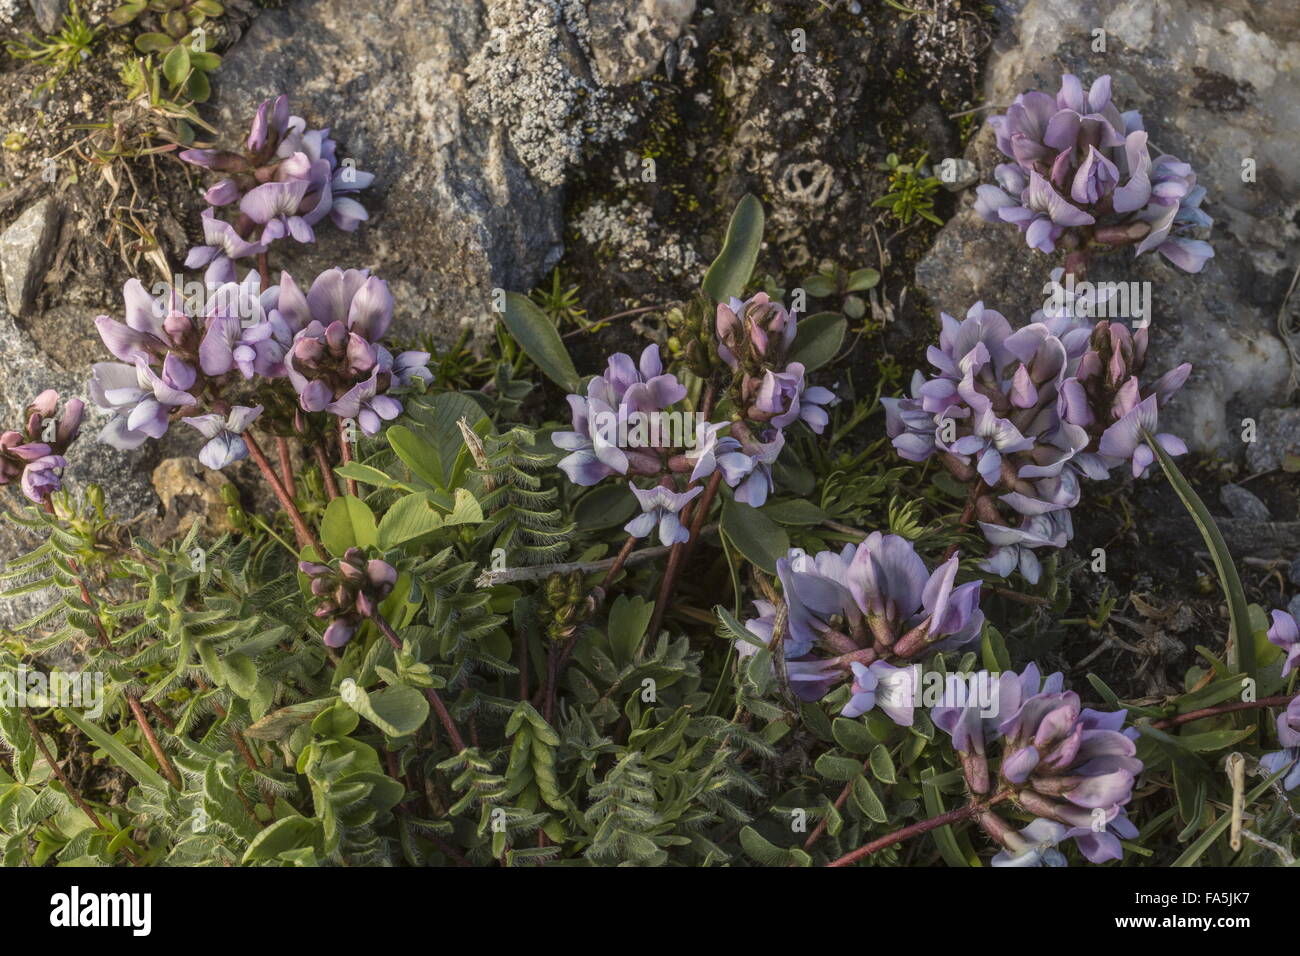 Swiss milk-vetch, Oxytropis helvetica in flower in the Vanoise National Park, France Stock Photo